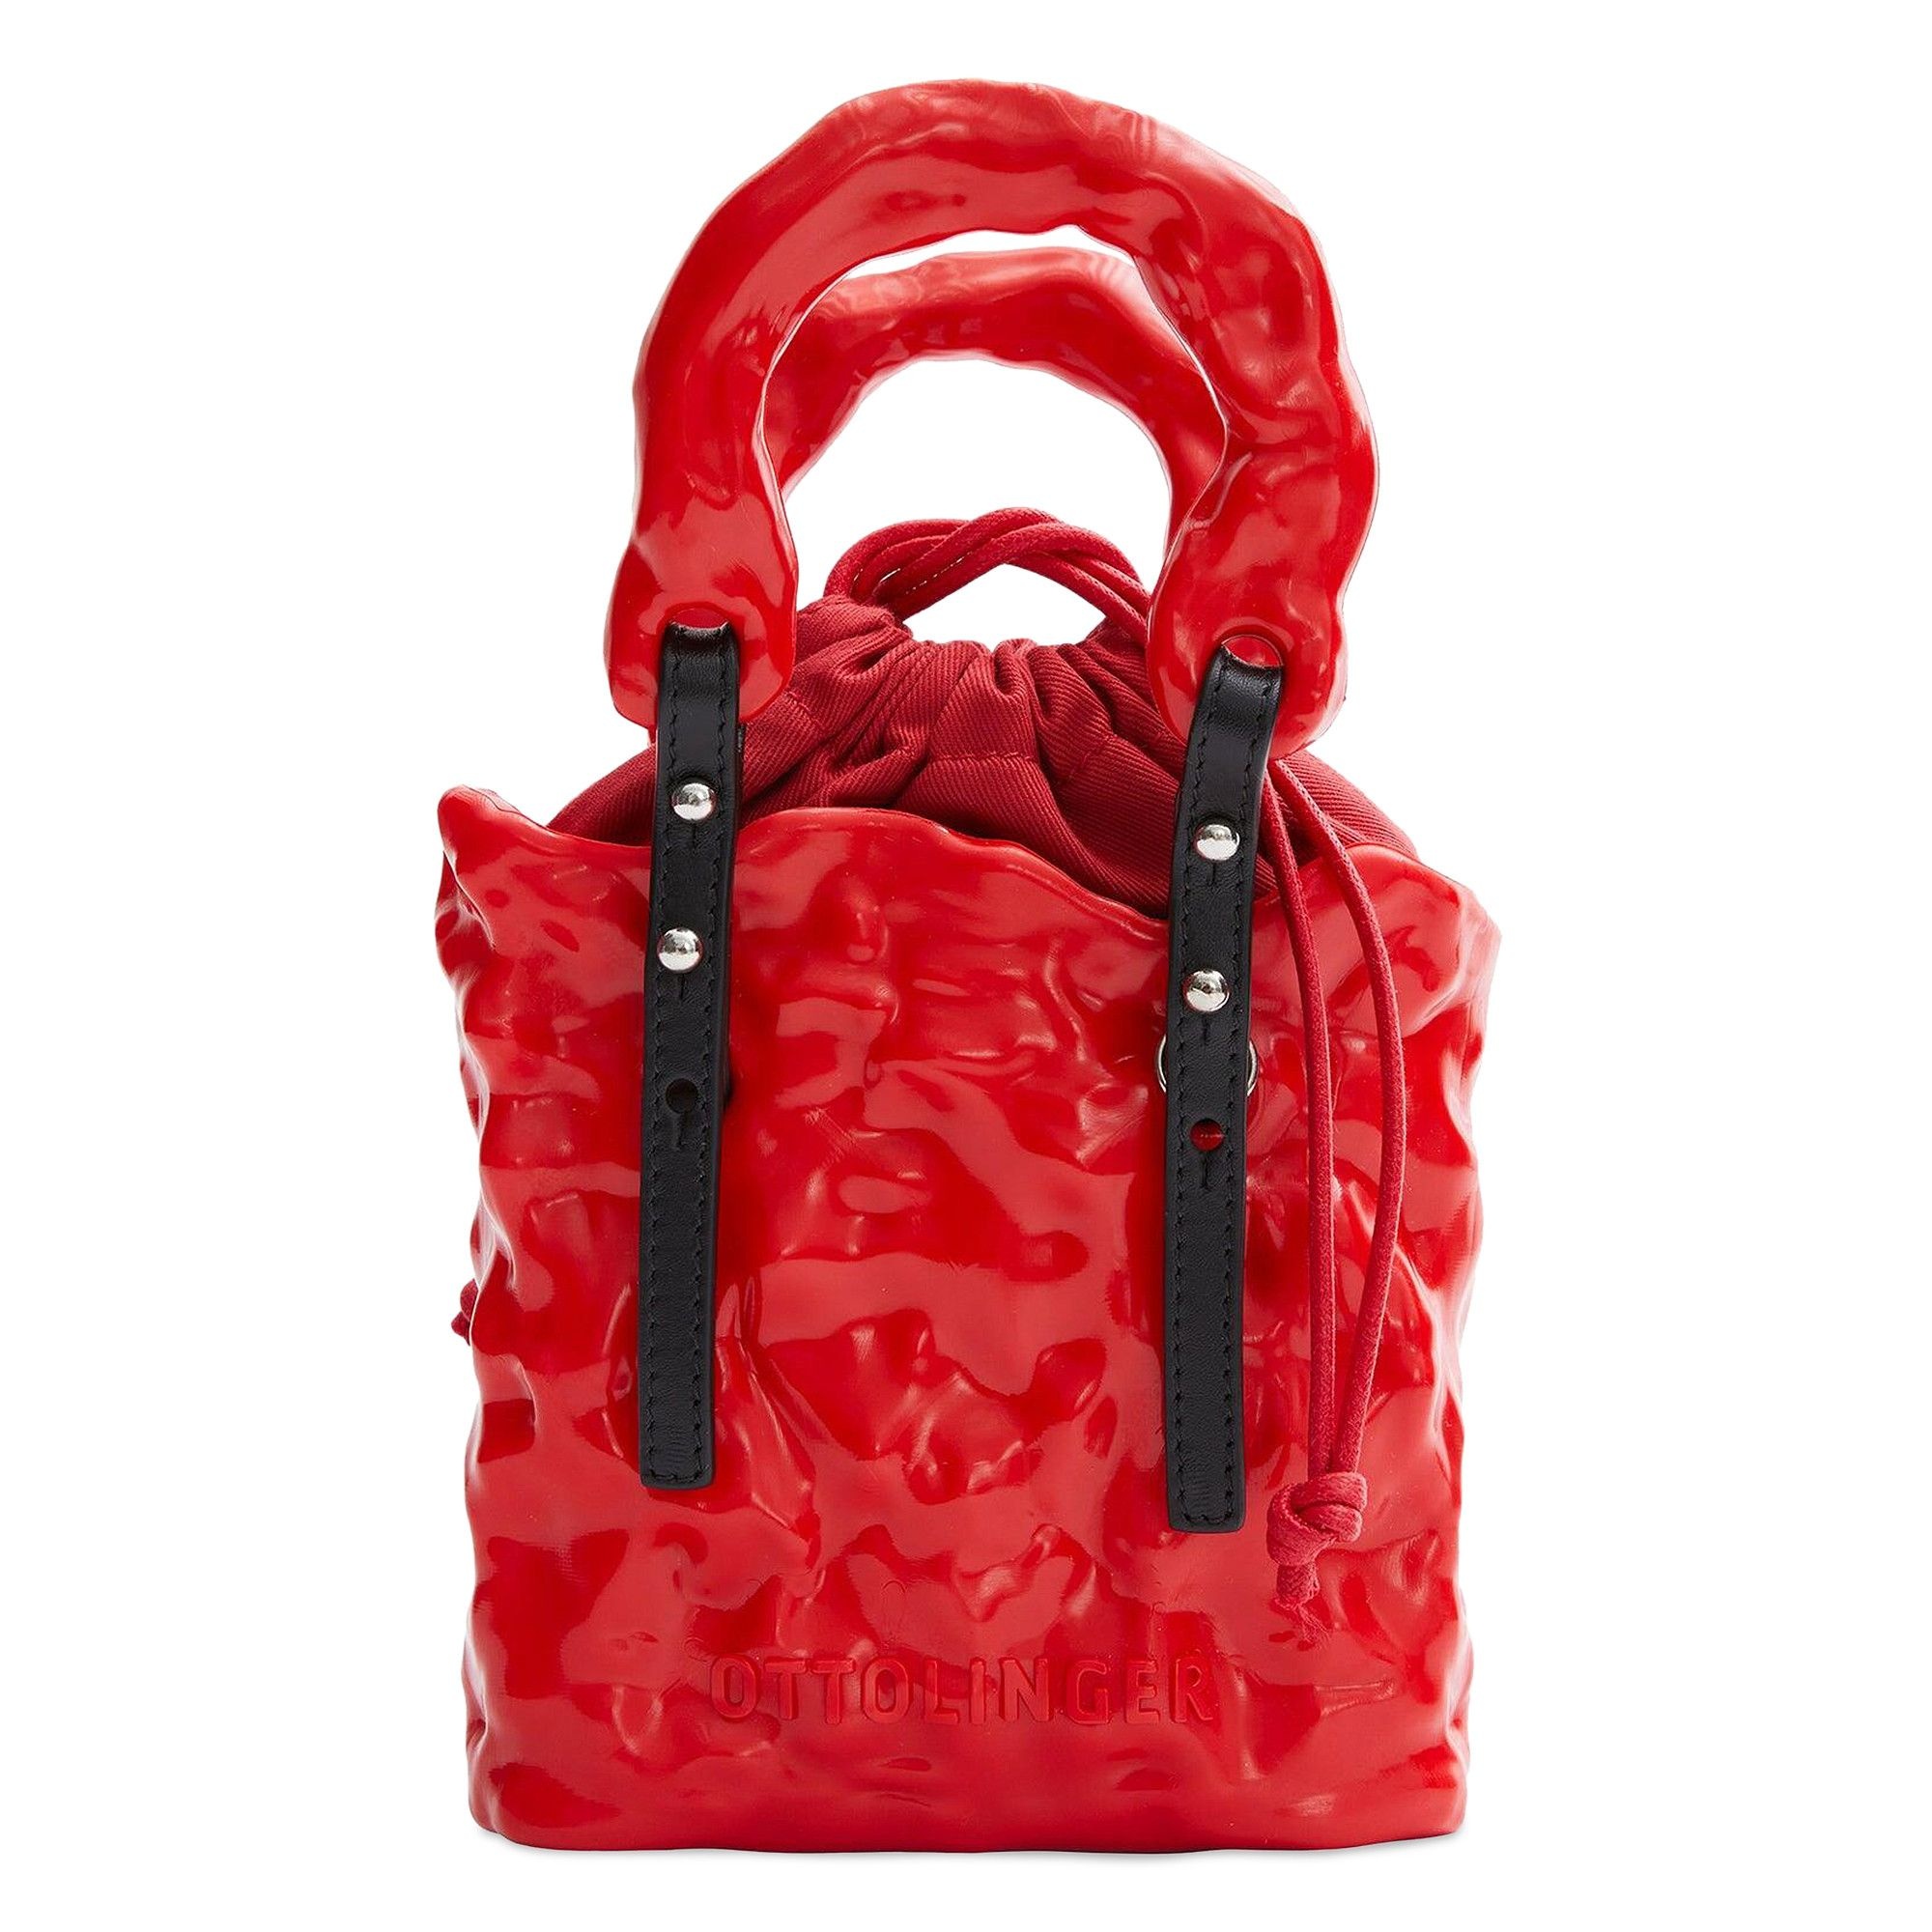 Ottolinger Signature Ceramic Bag 'Red' - 1